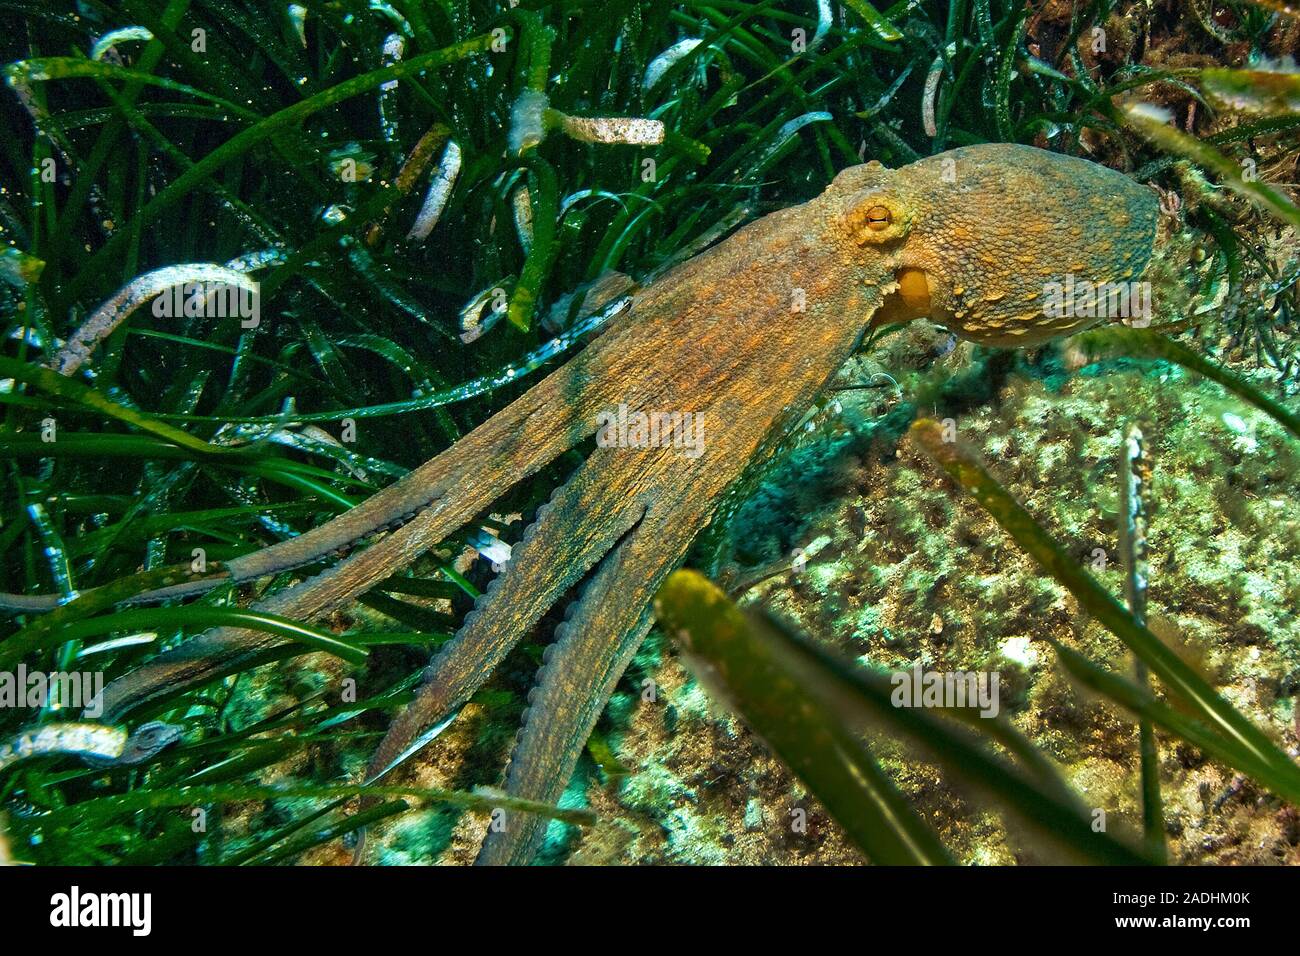 Poulpe commun (Octopus vulgaris) dans les algues, le parc marin Dragonera, Sant Elm, Majorque, îles Baléares, Espagne Banque D'Images